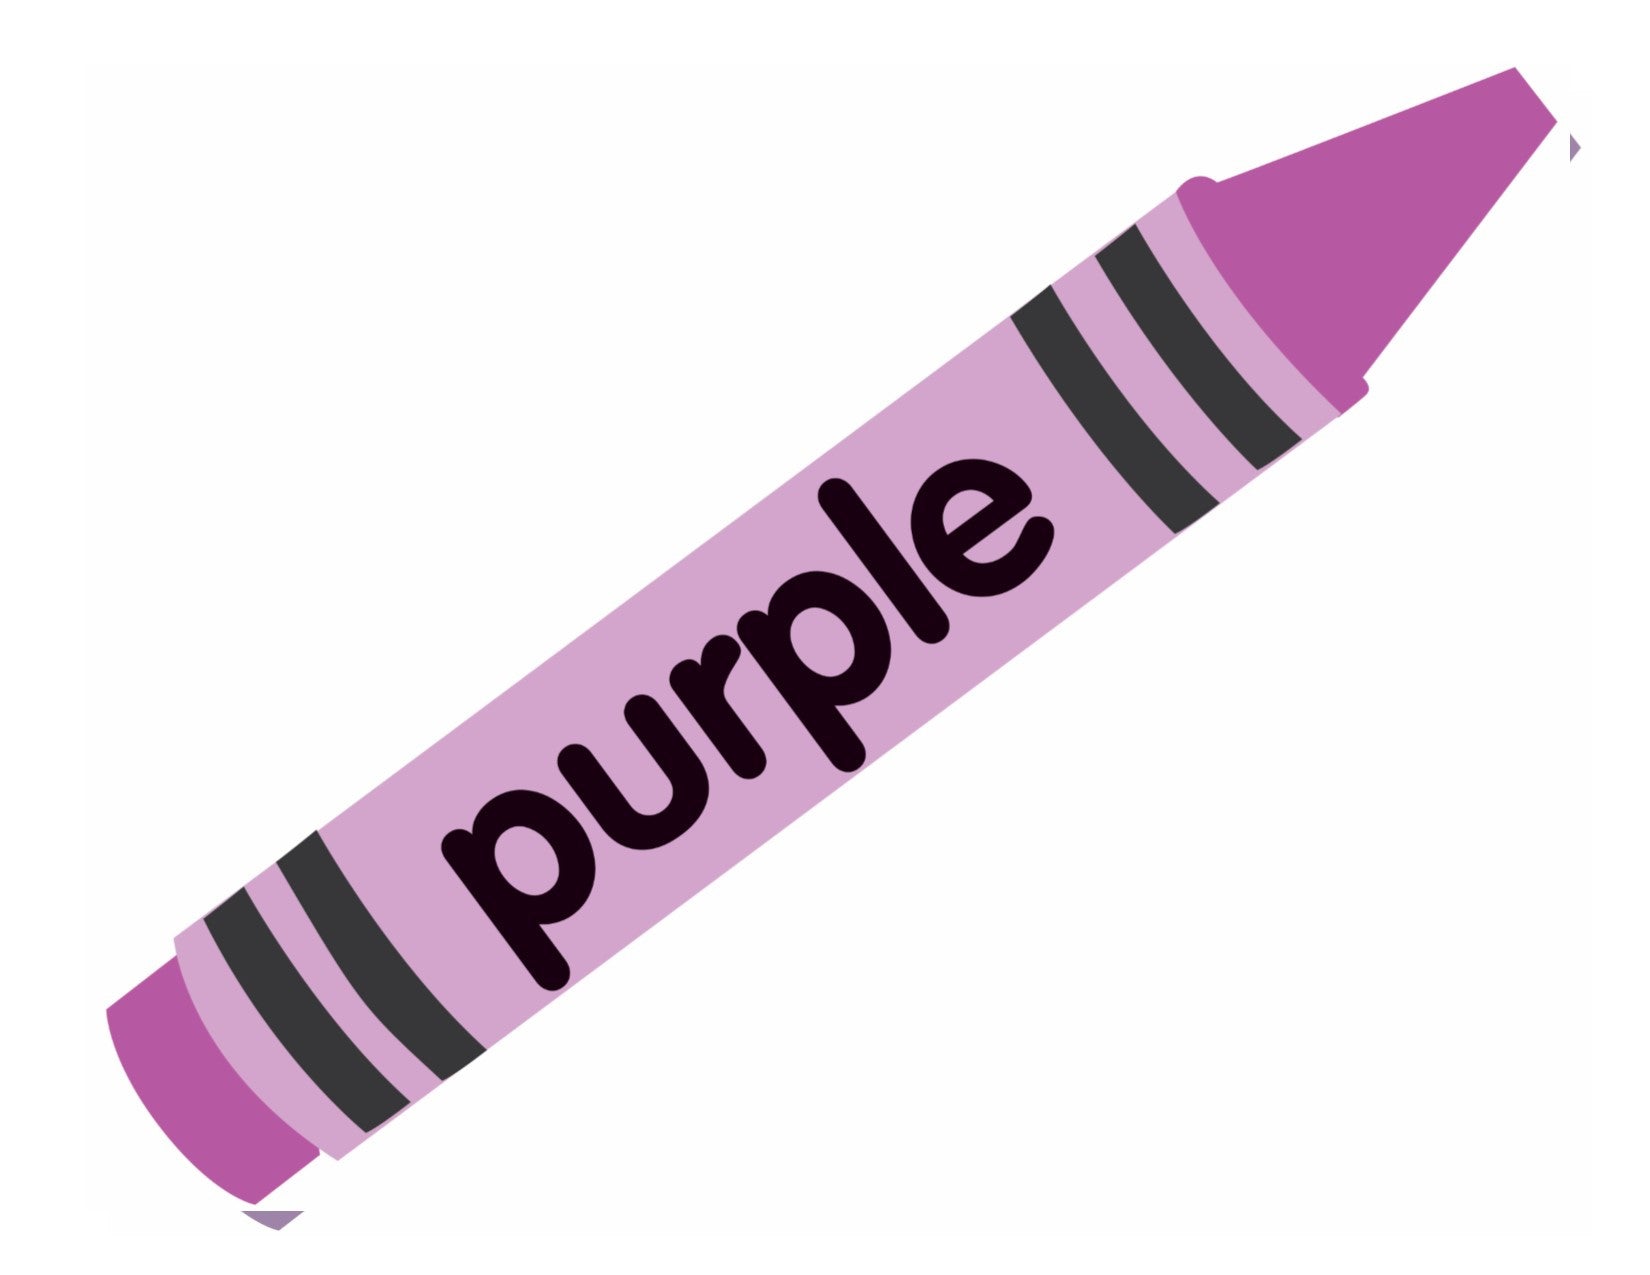 purple crayon clip art